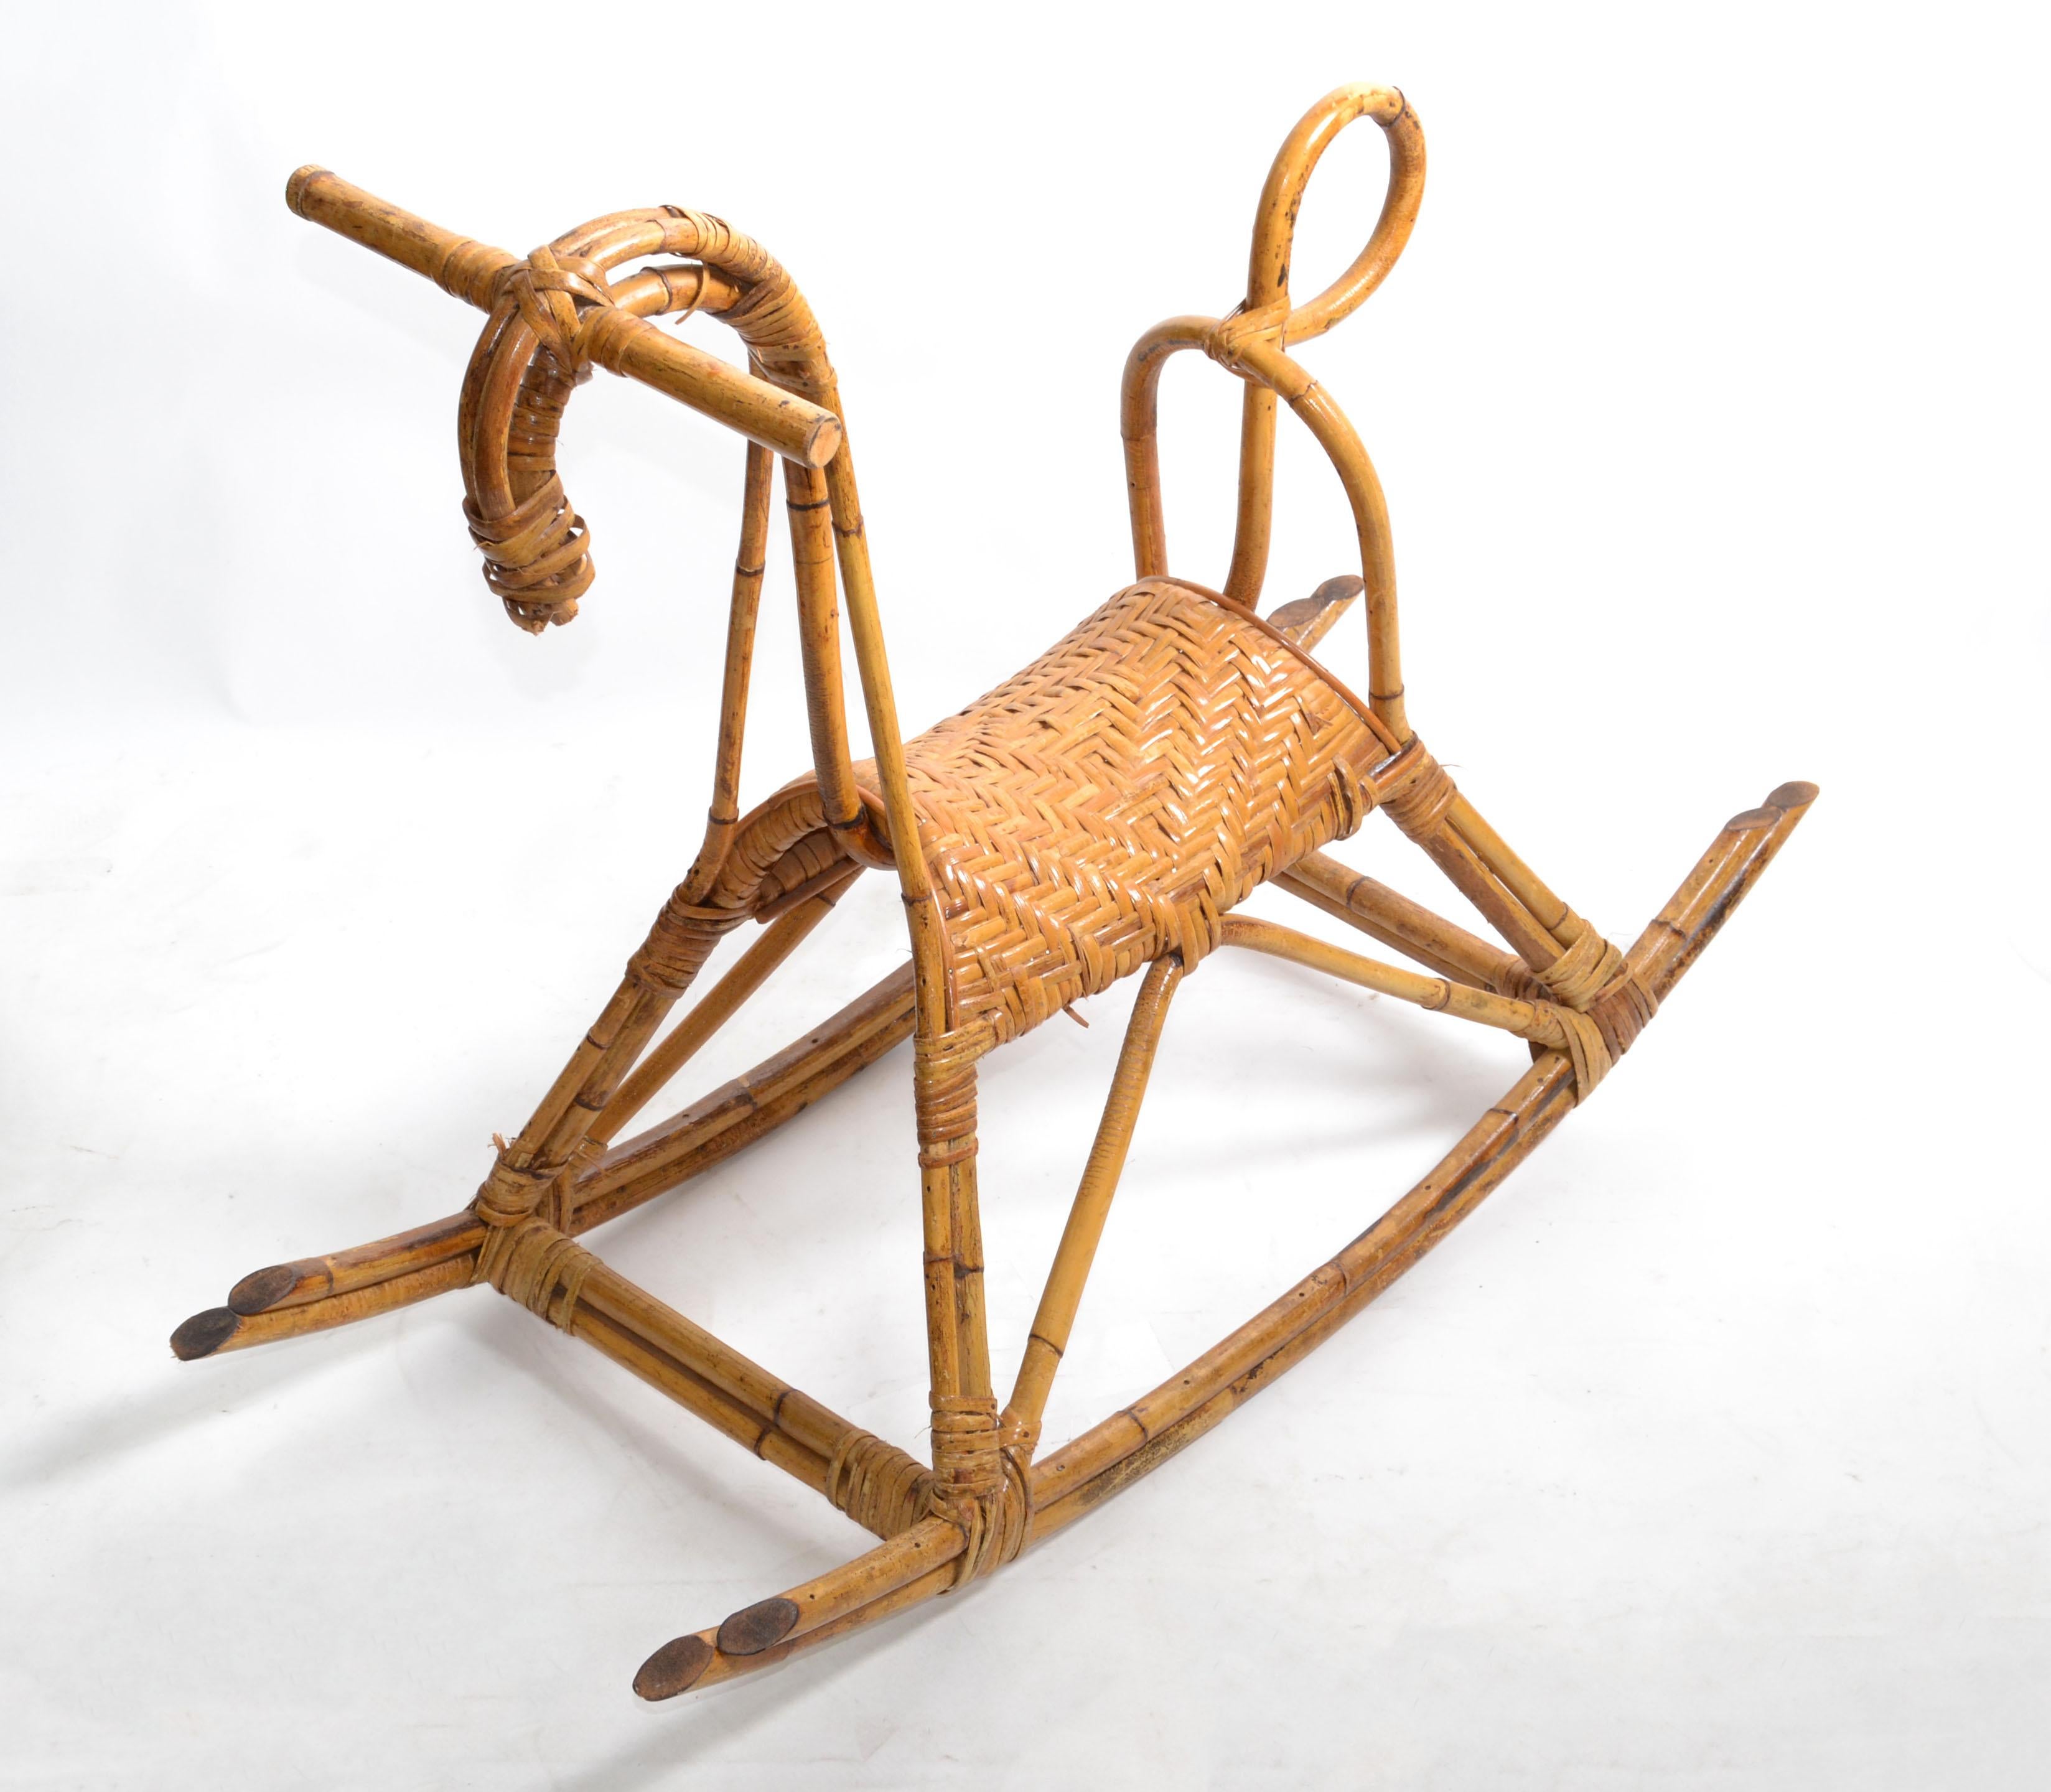 Original Franco Albini Mid-Century Modern Rattan und Bambus Schaukelpferd, Tier-Skulptur. 
Schaukelpferd aus Rattan und Bambus mit Sitz aus Korbgeflecht.
Dieses Pferd bringt kleinen und großen Kindern Freude.
Ein großartiges Design aus der Mitte